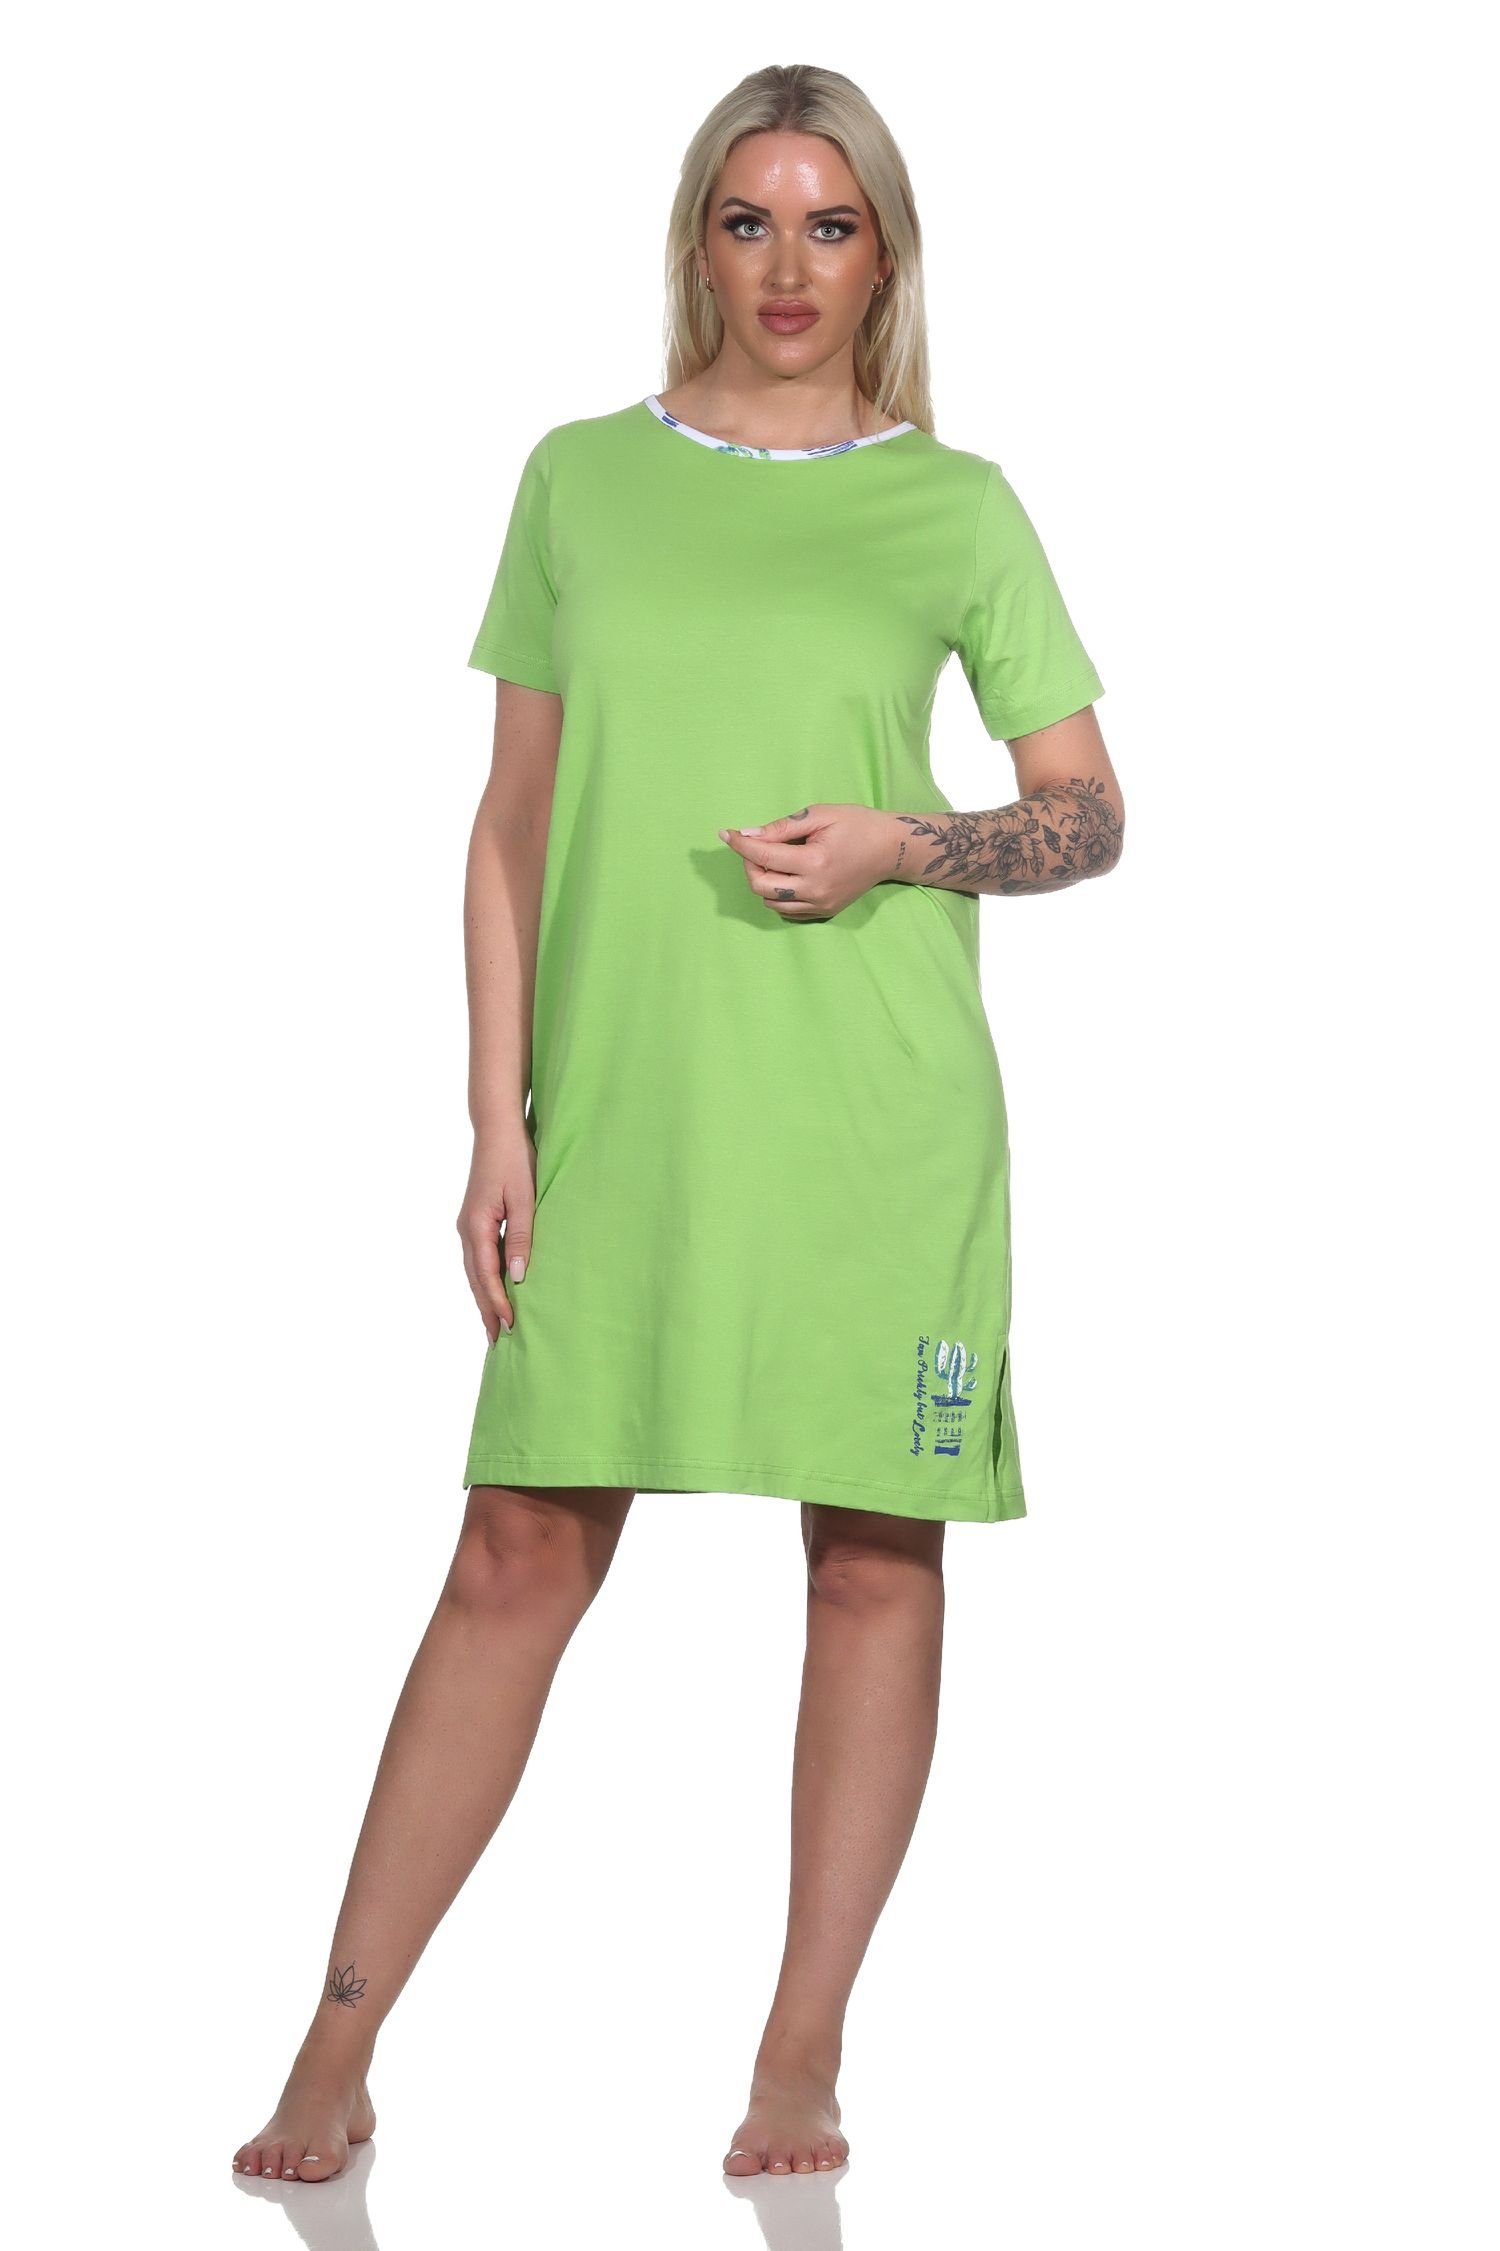 grün Damen Kaktus Nachthemd kurzarm Nachthemd mit Motiv als Normann